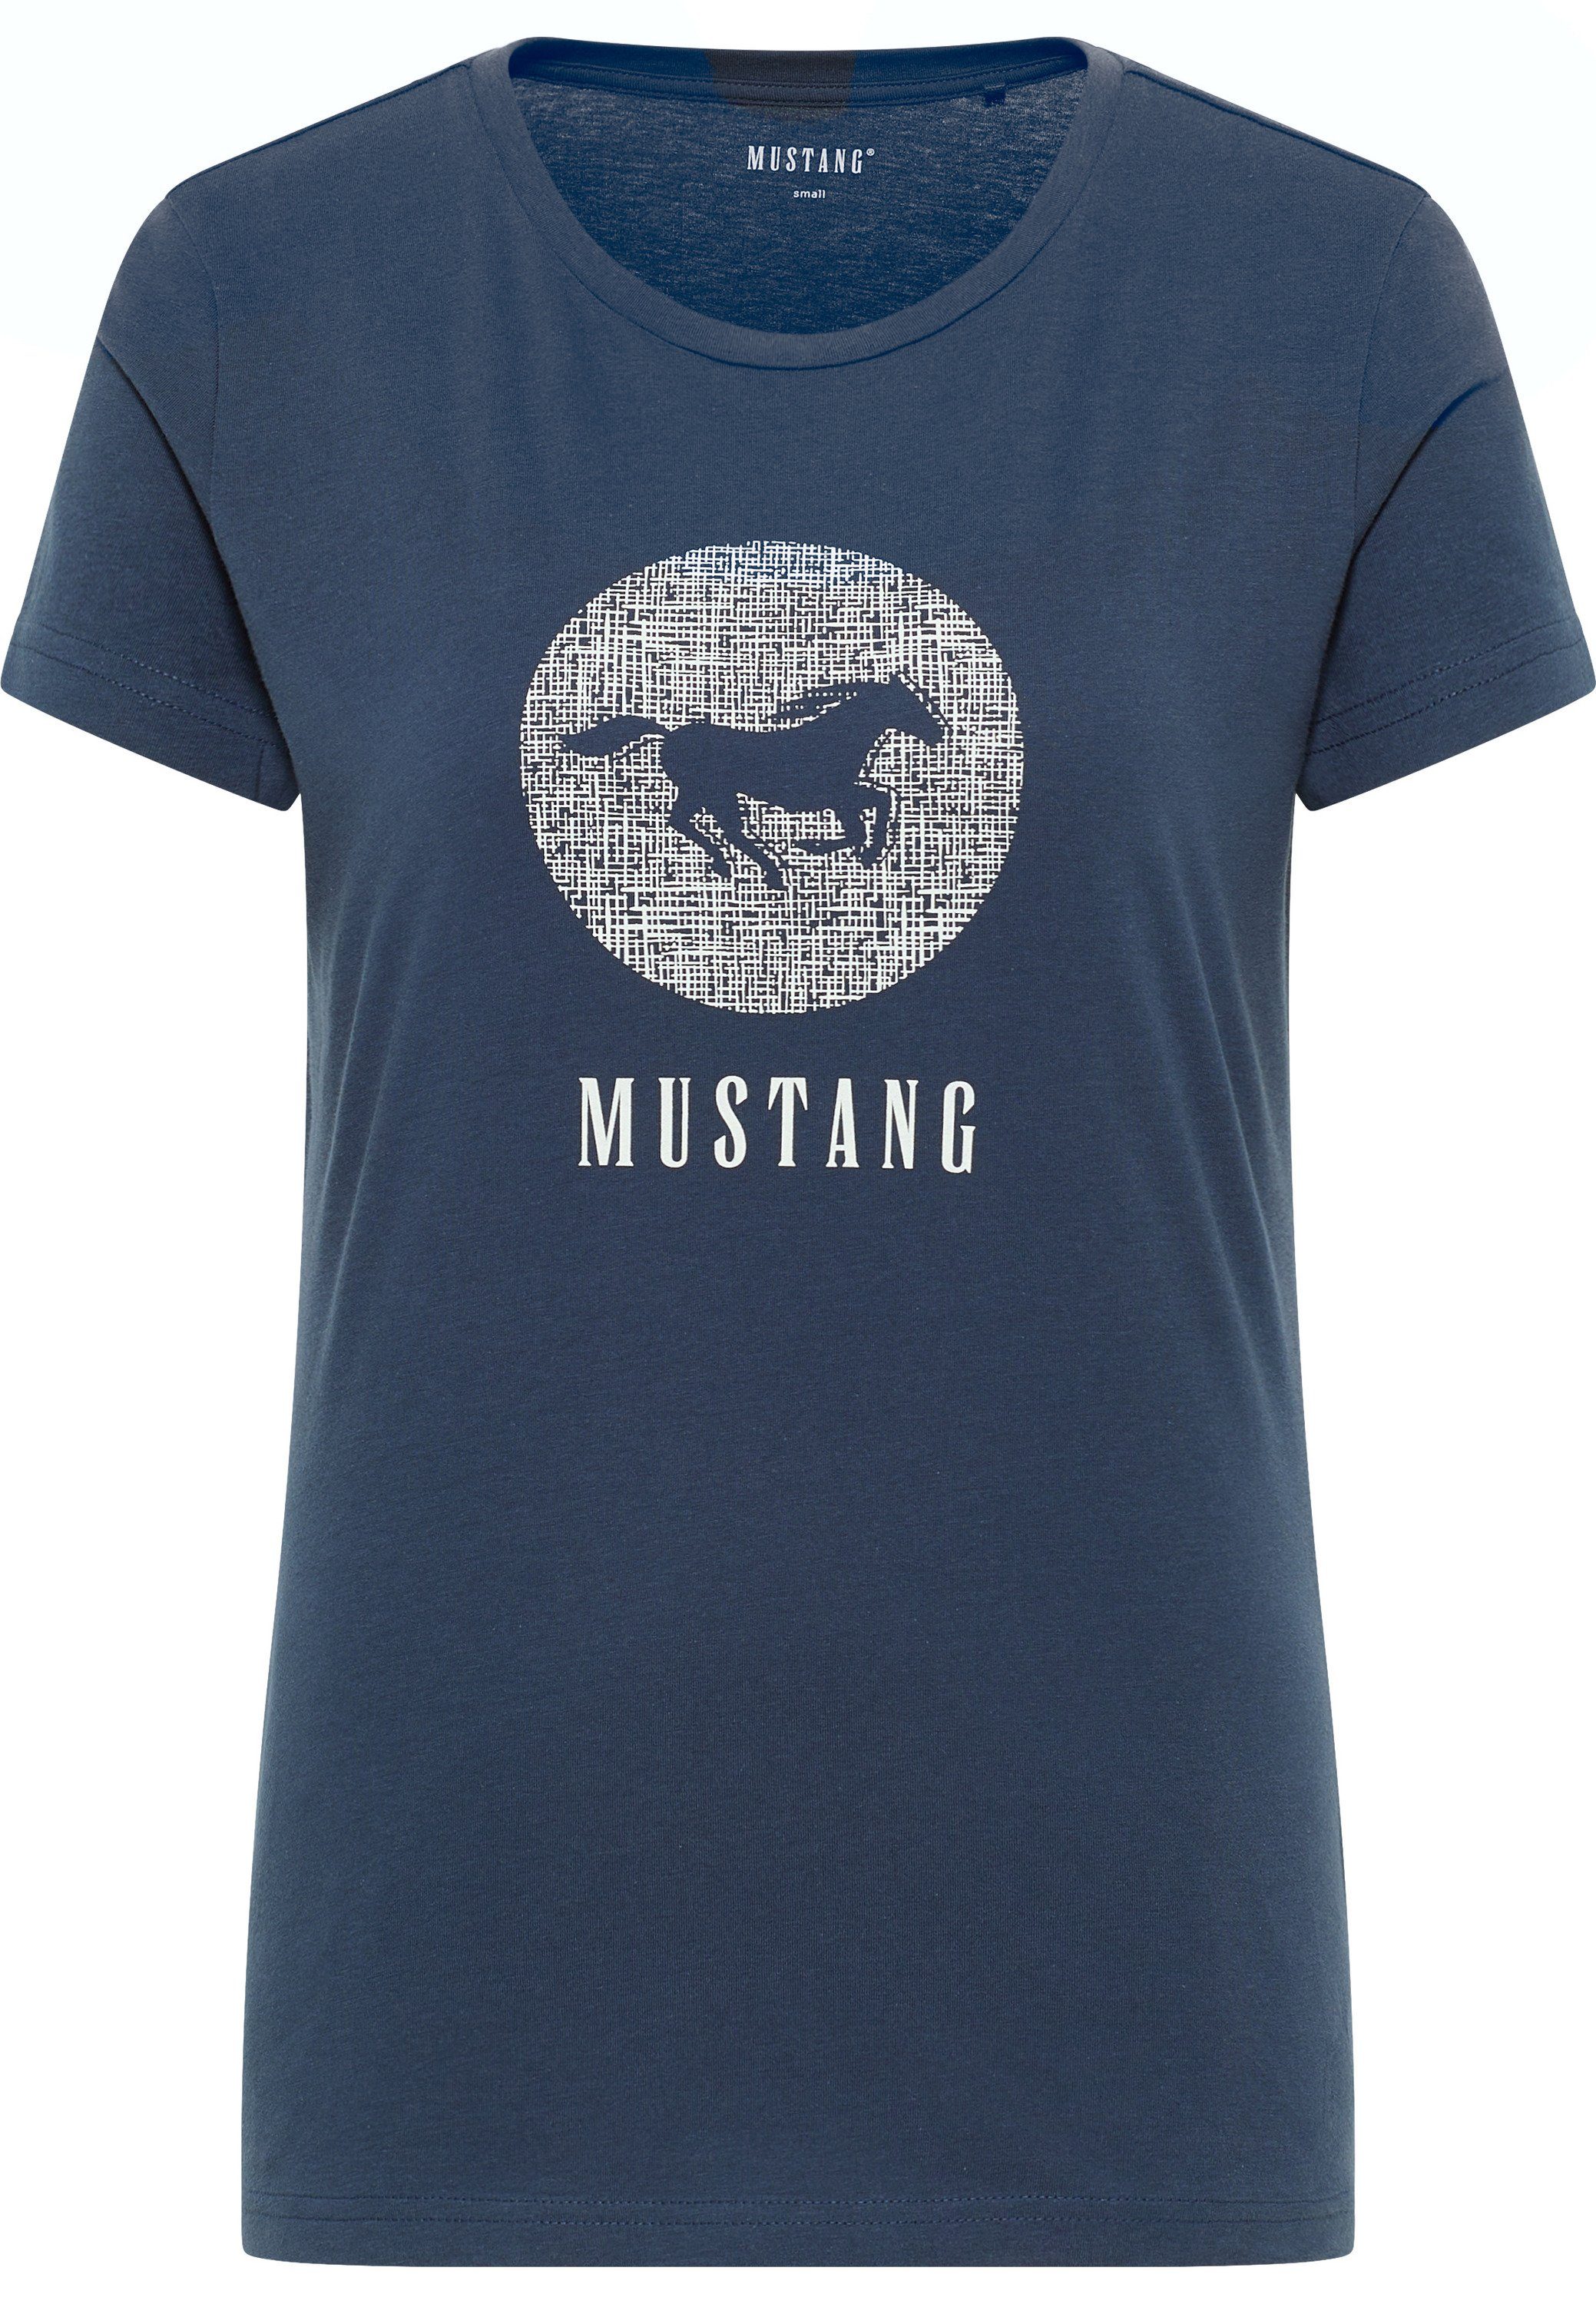 Kurzarmshirt MUSTANG T-Shirt Print-Shirt, Mustang Bedrucktes